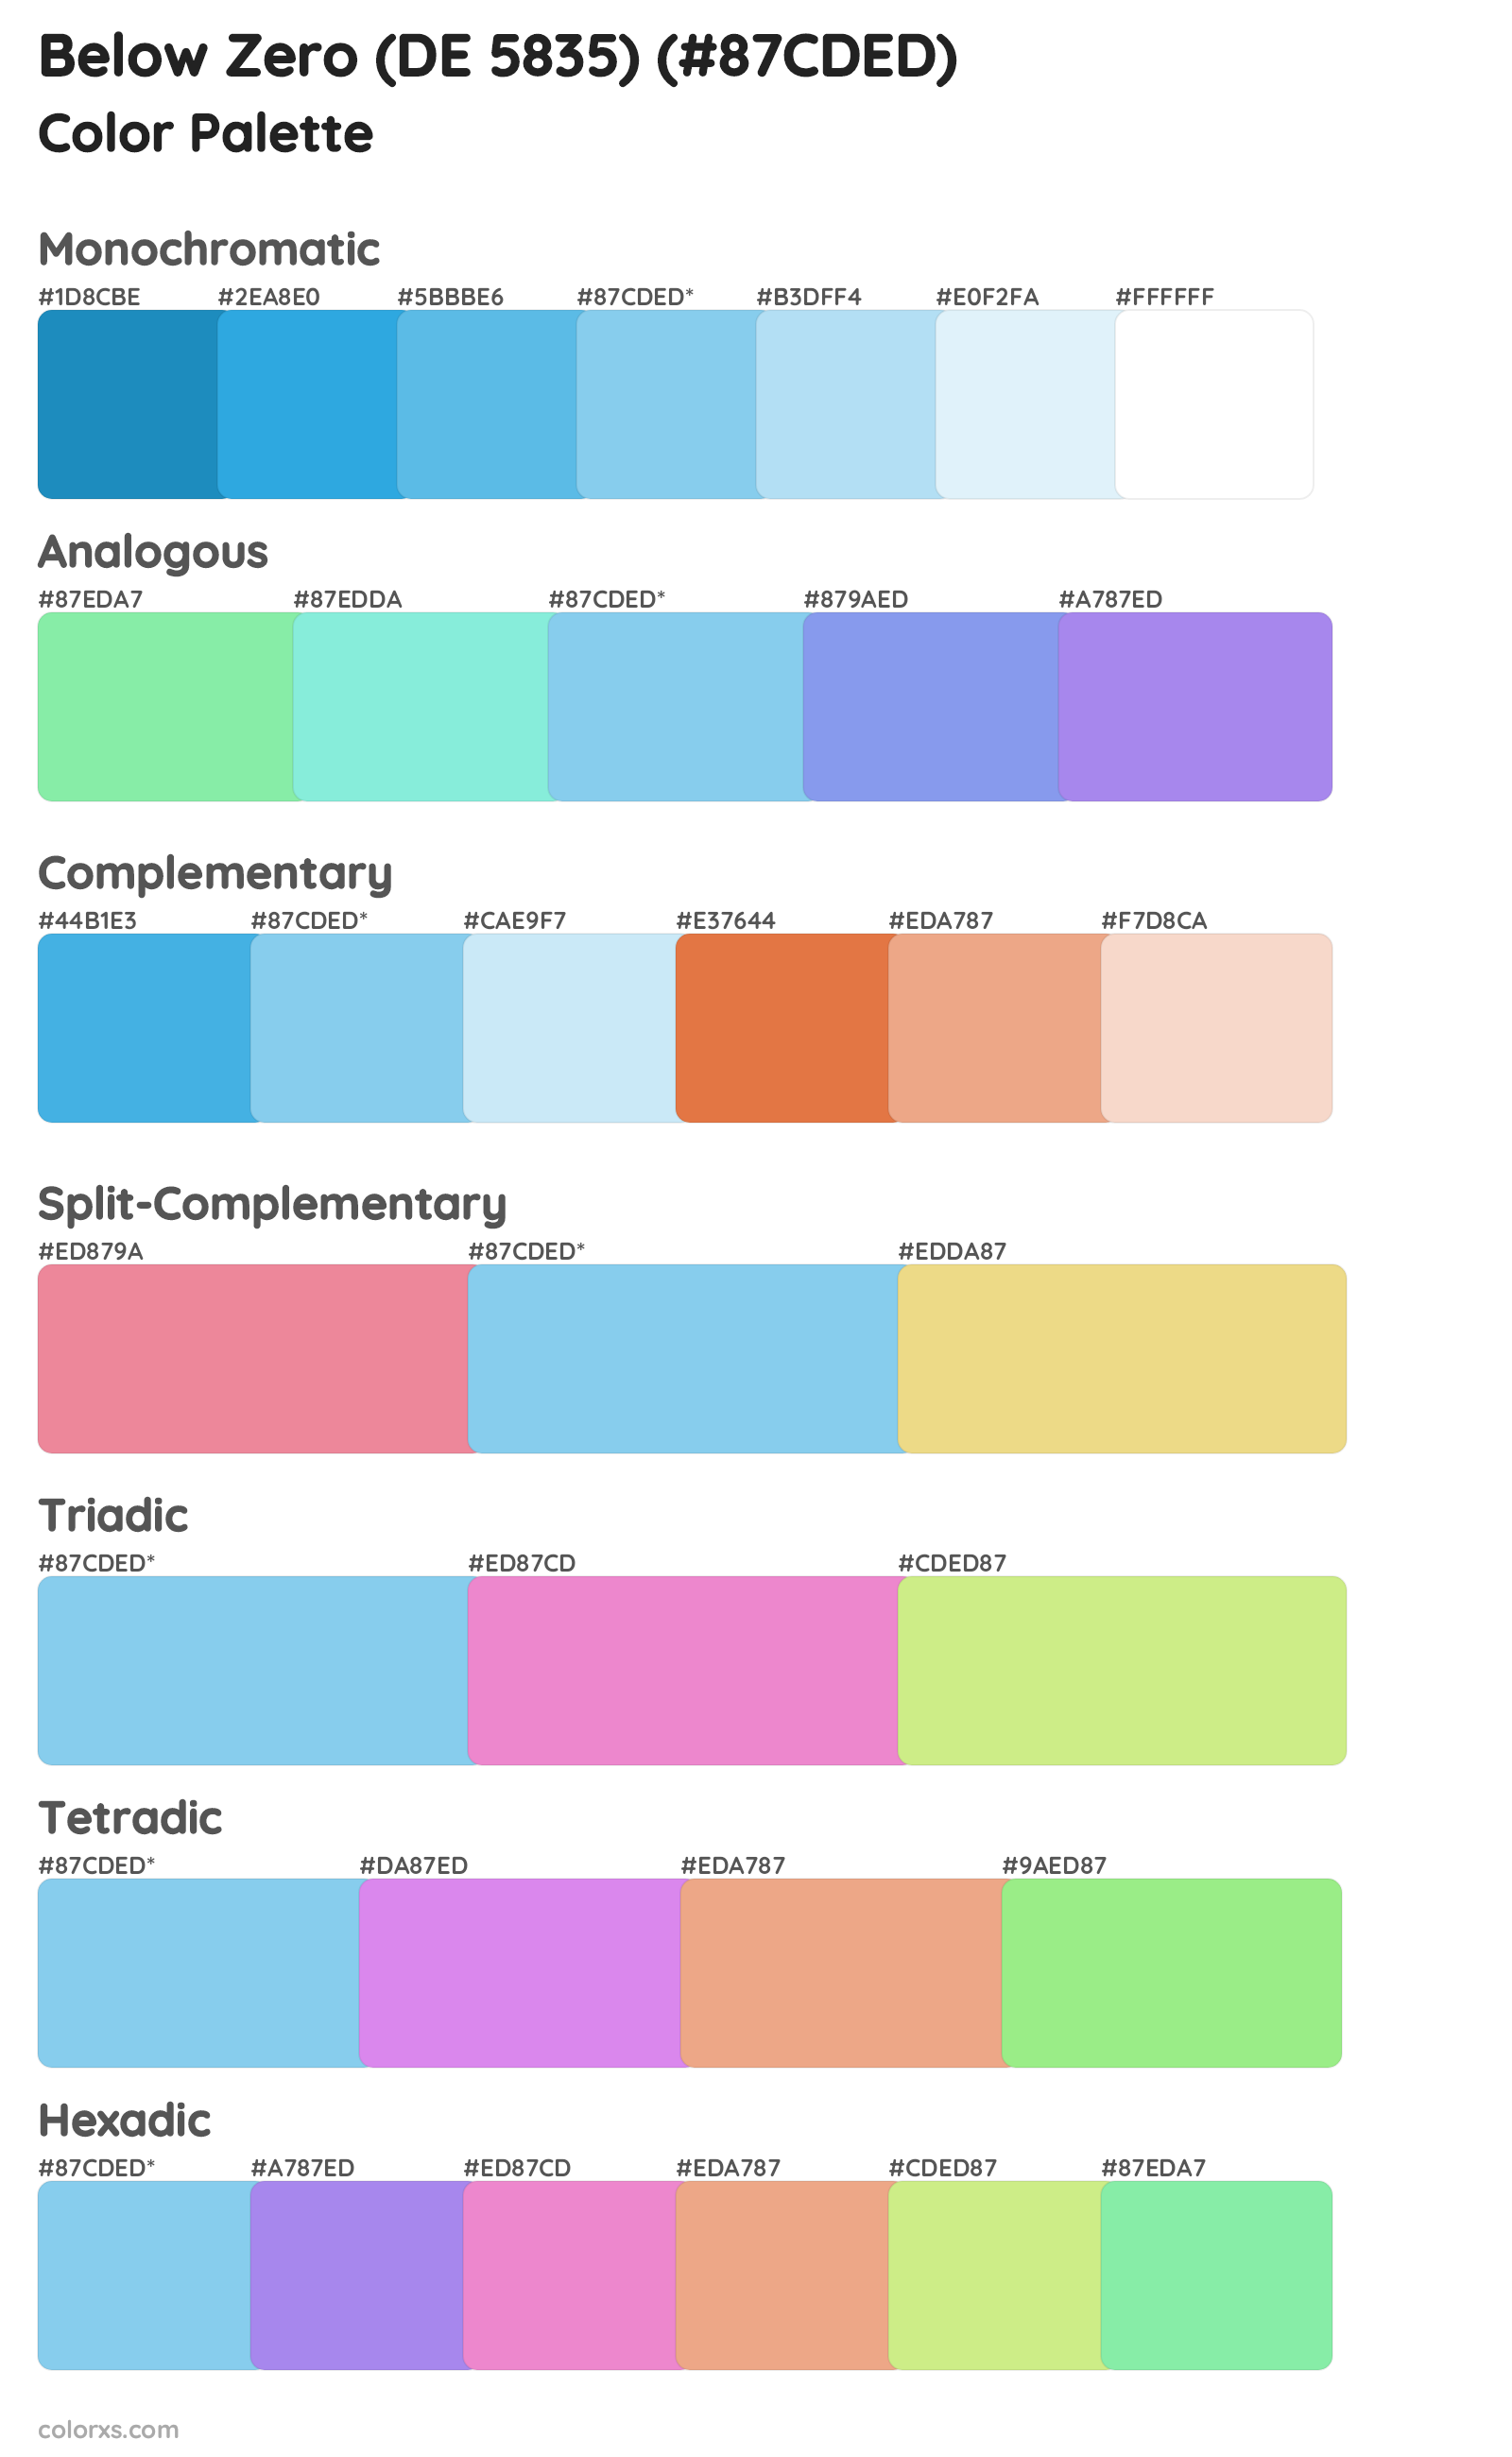 Below Zero (DE 5835) Color Scheme Palettes